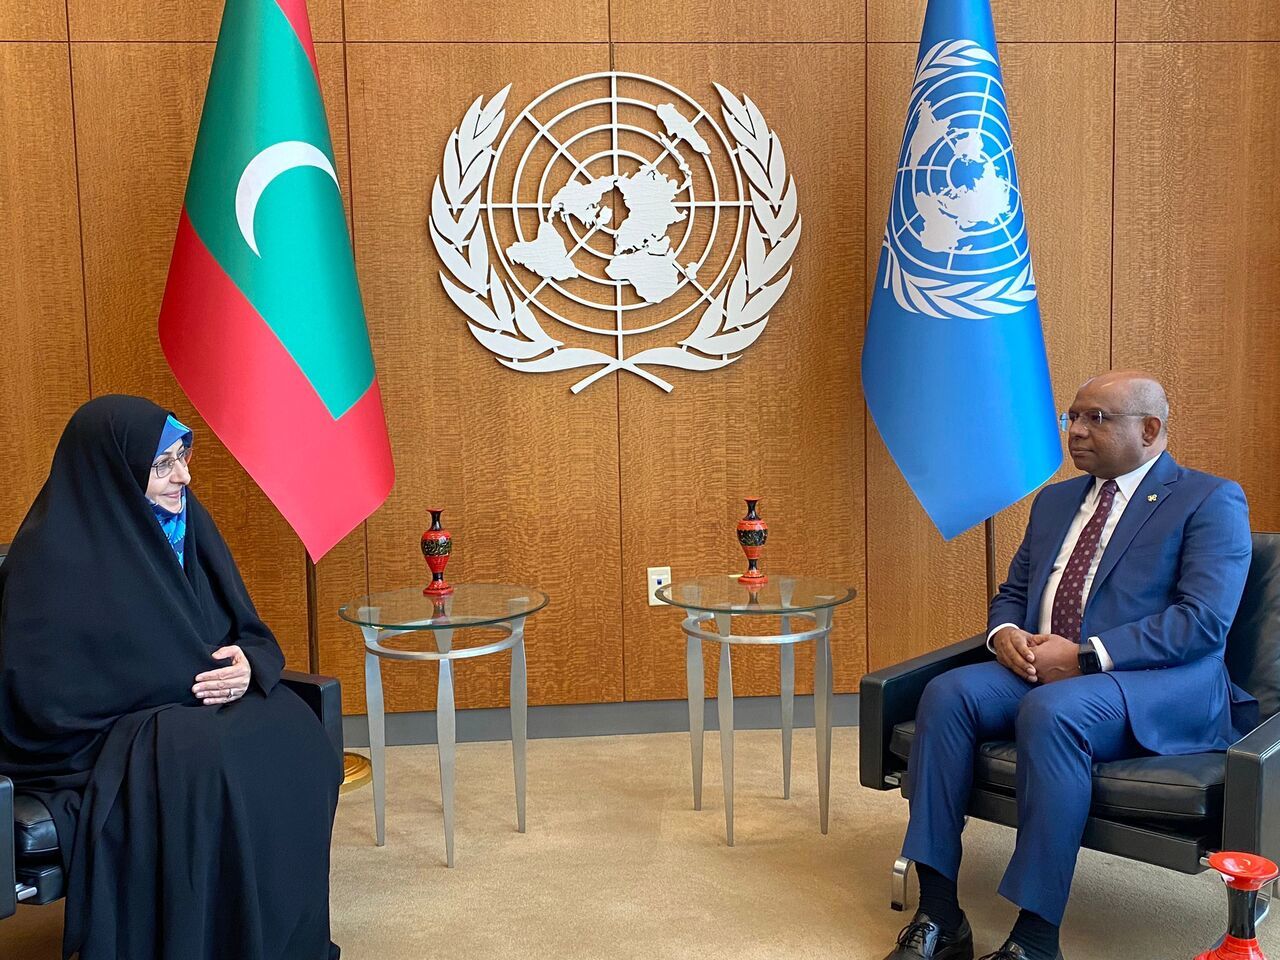 داستان پرچم مالدیو در دیدار خزعلی در سازمان ملل چه بود؟ 